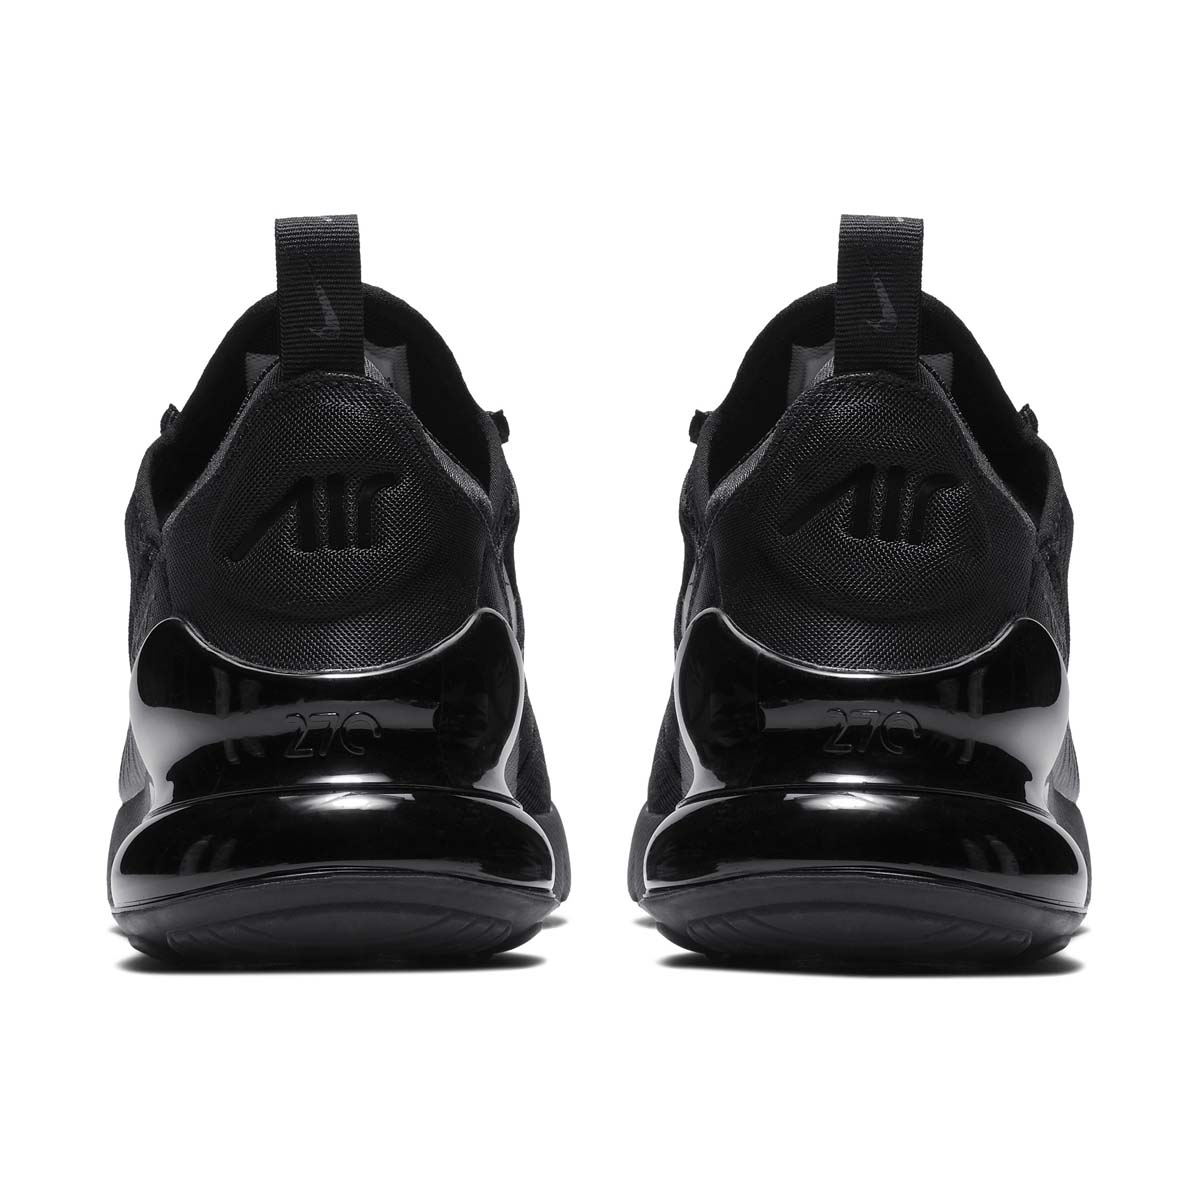 Black Air Max 270 Shoes.